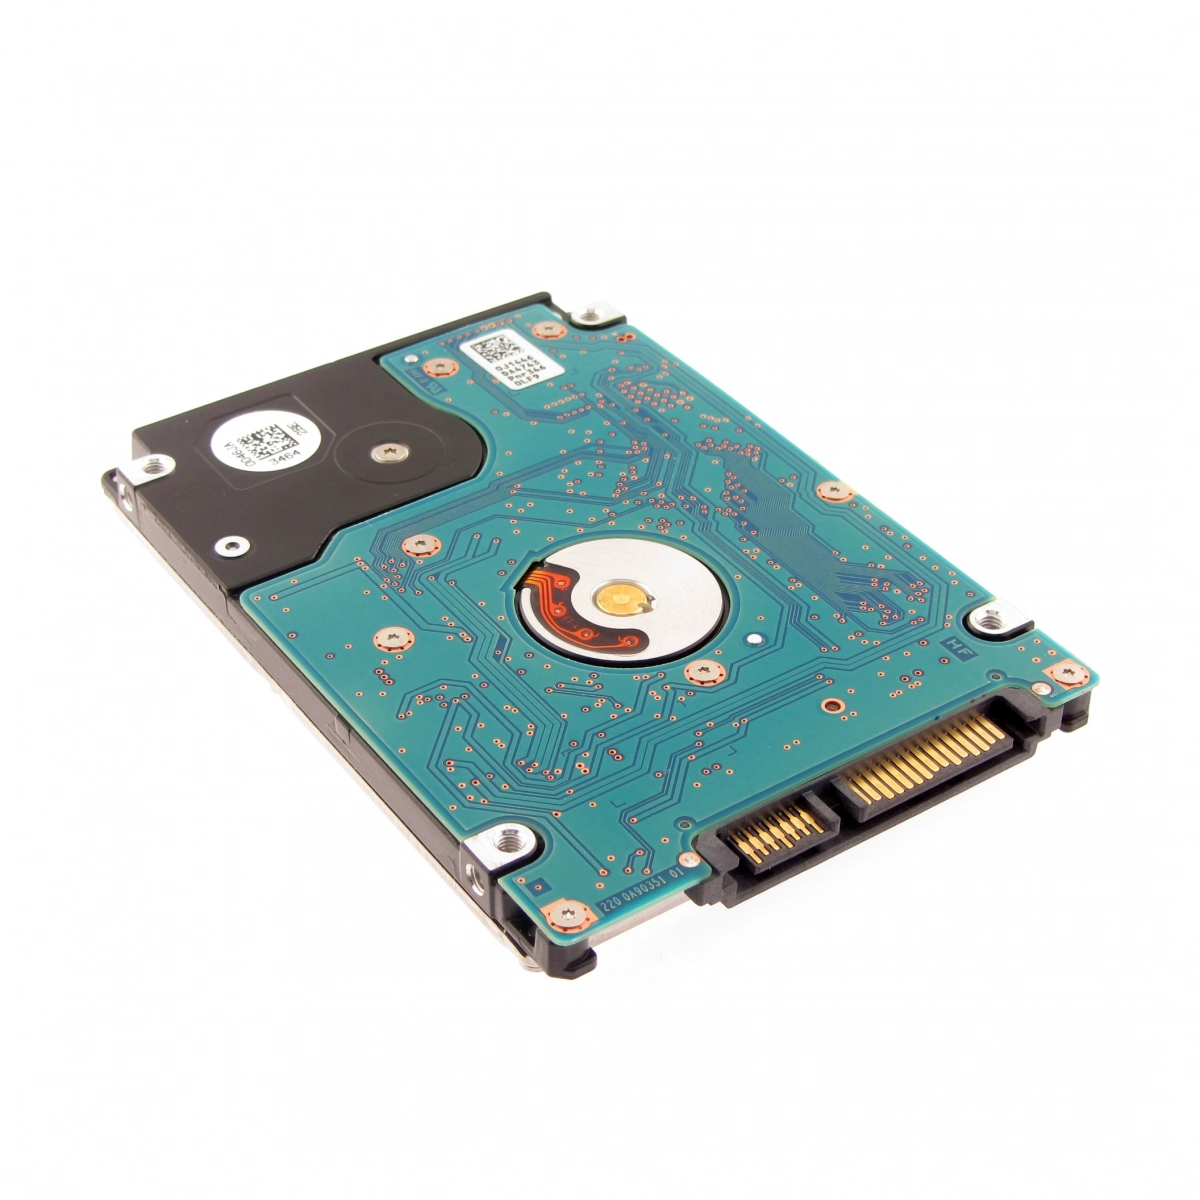 Notebook-Festplatte 1TB, 7mm, 7200rpm, 128MB für TOSHIBA Satellite A100-283